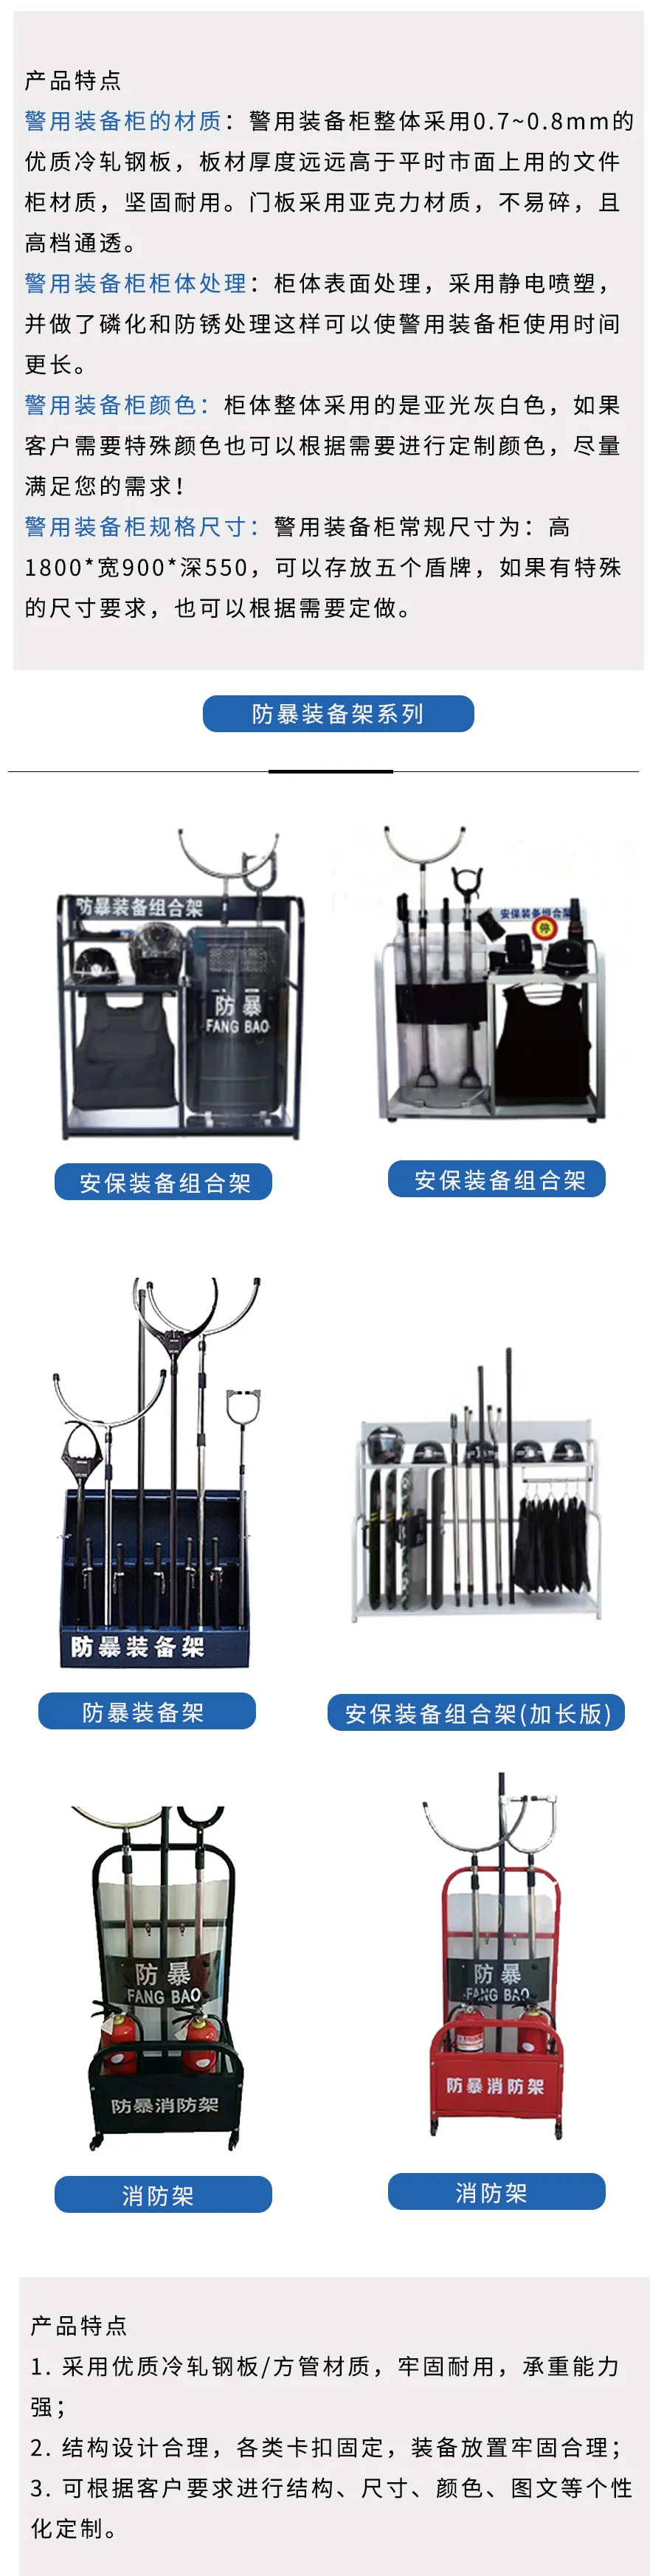 警用装备柜装备架系列产品一览组图